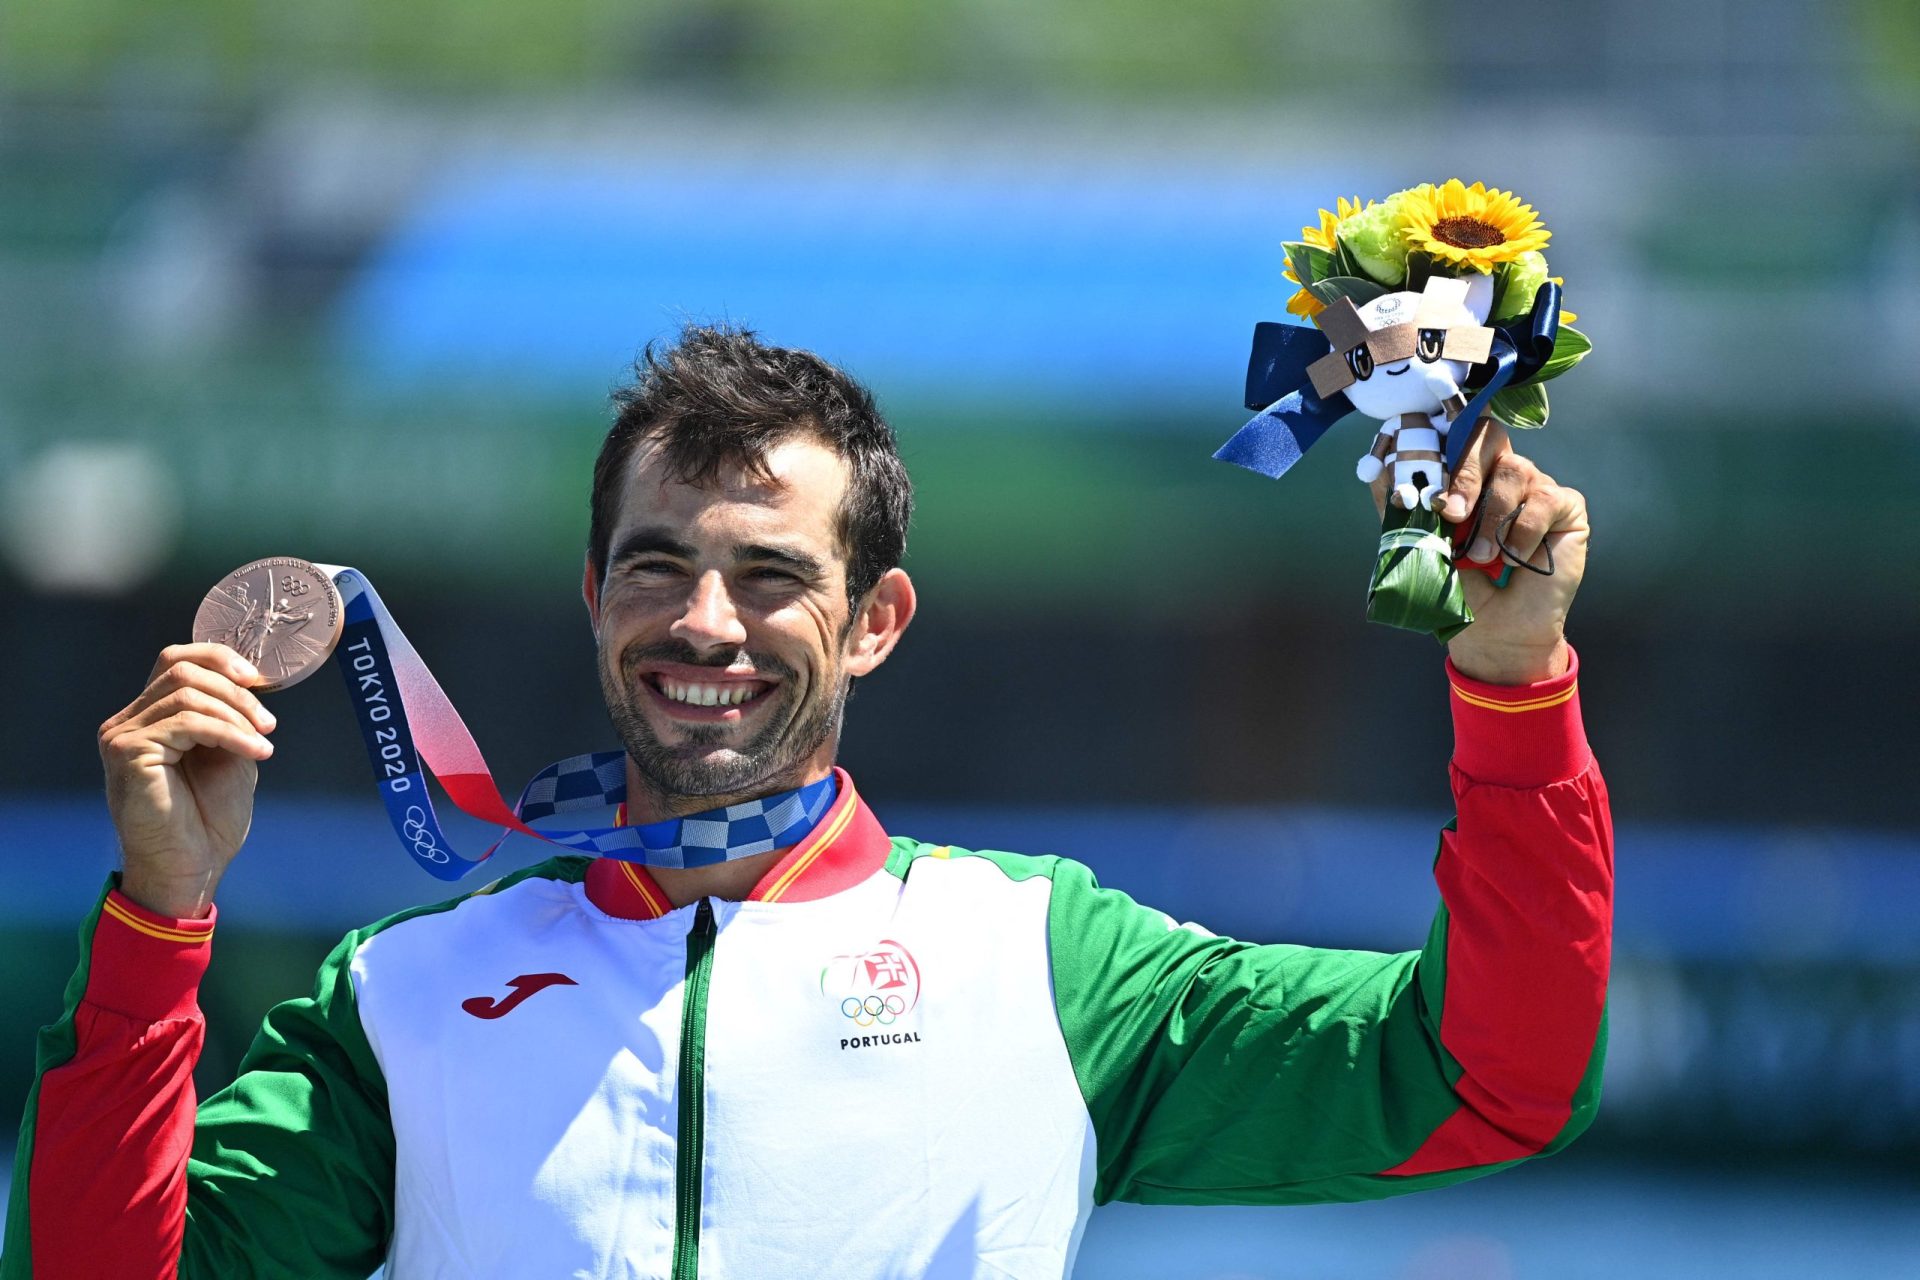 Não há duas sem três: Fernando Pimenta vence medalha de bronze nos Jogos Olímpicos